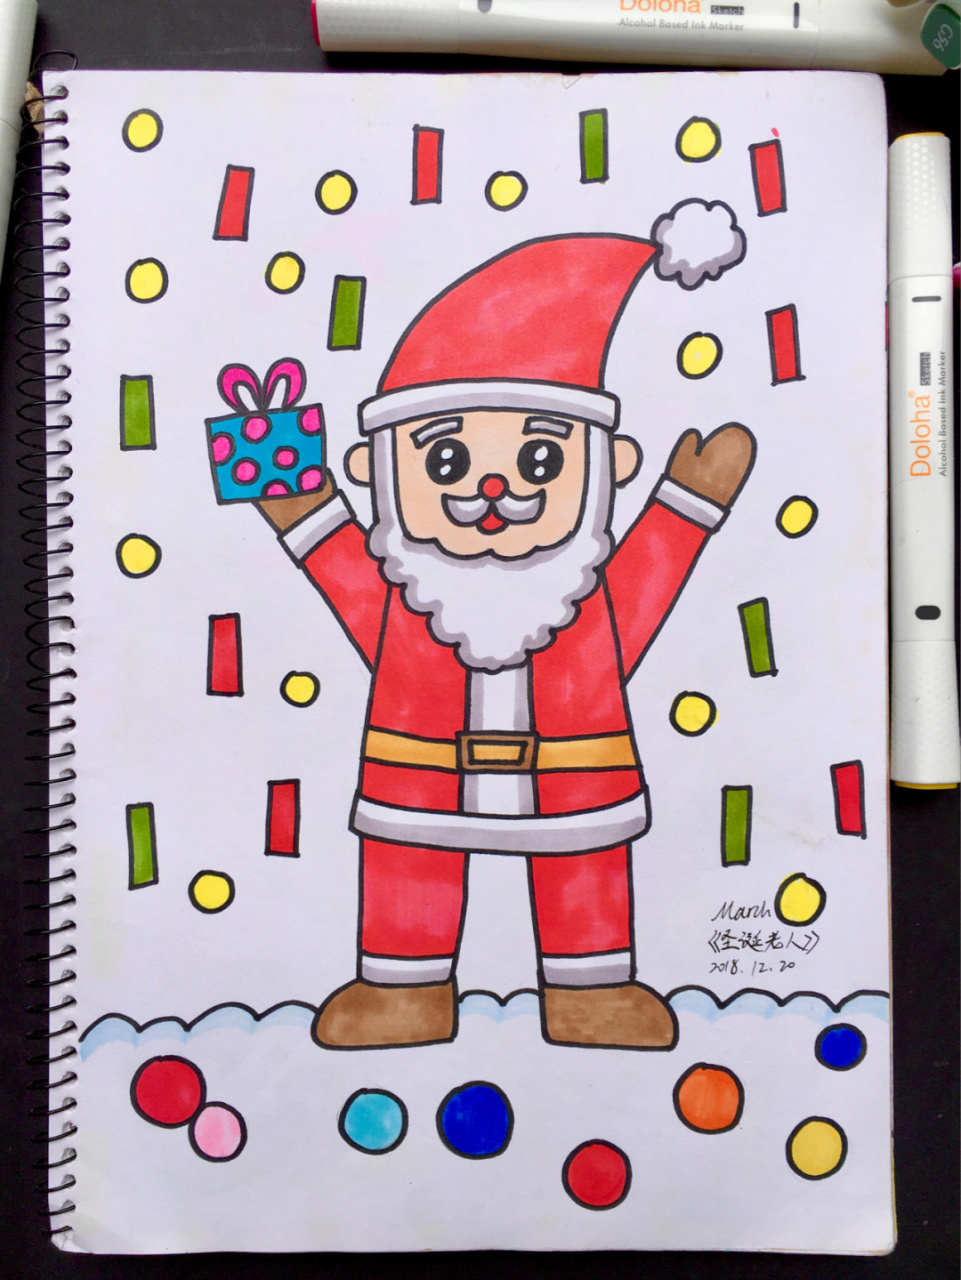 【圣诞老人91】马克笔手绘简笔儿童画创意幼 圣诞节系列90来啦!